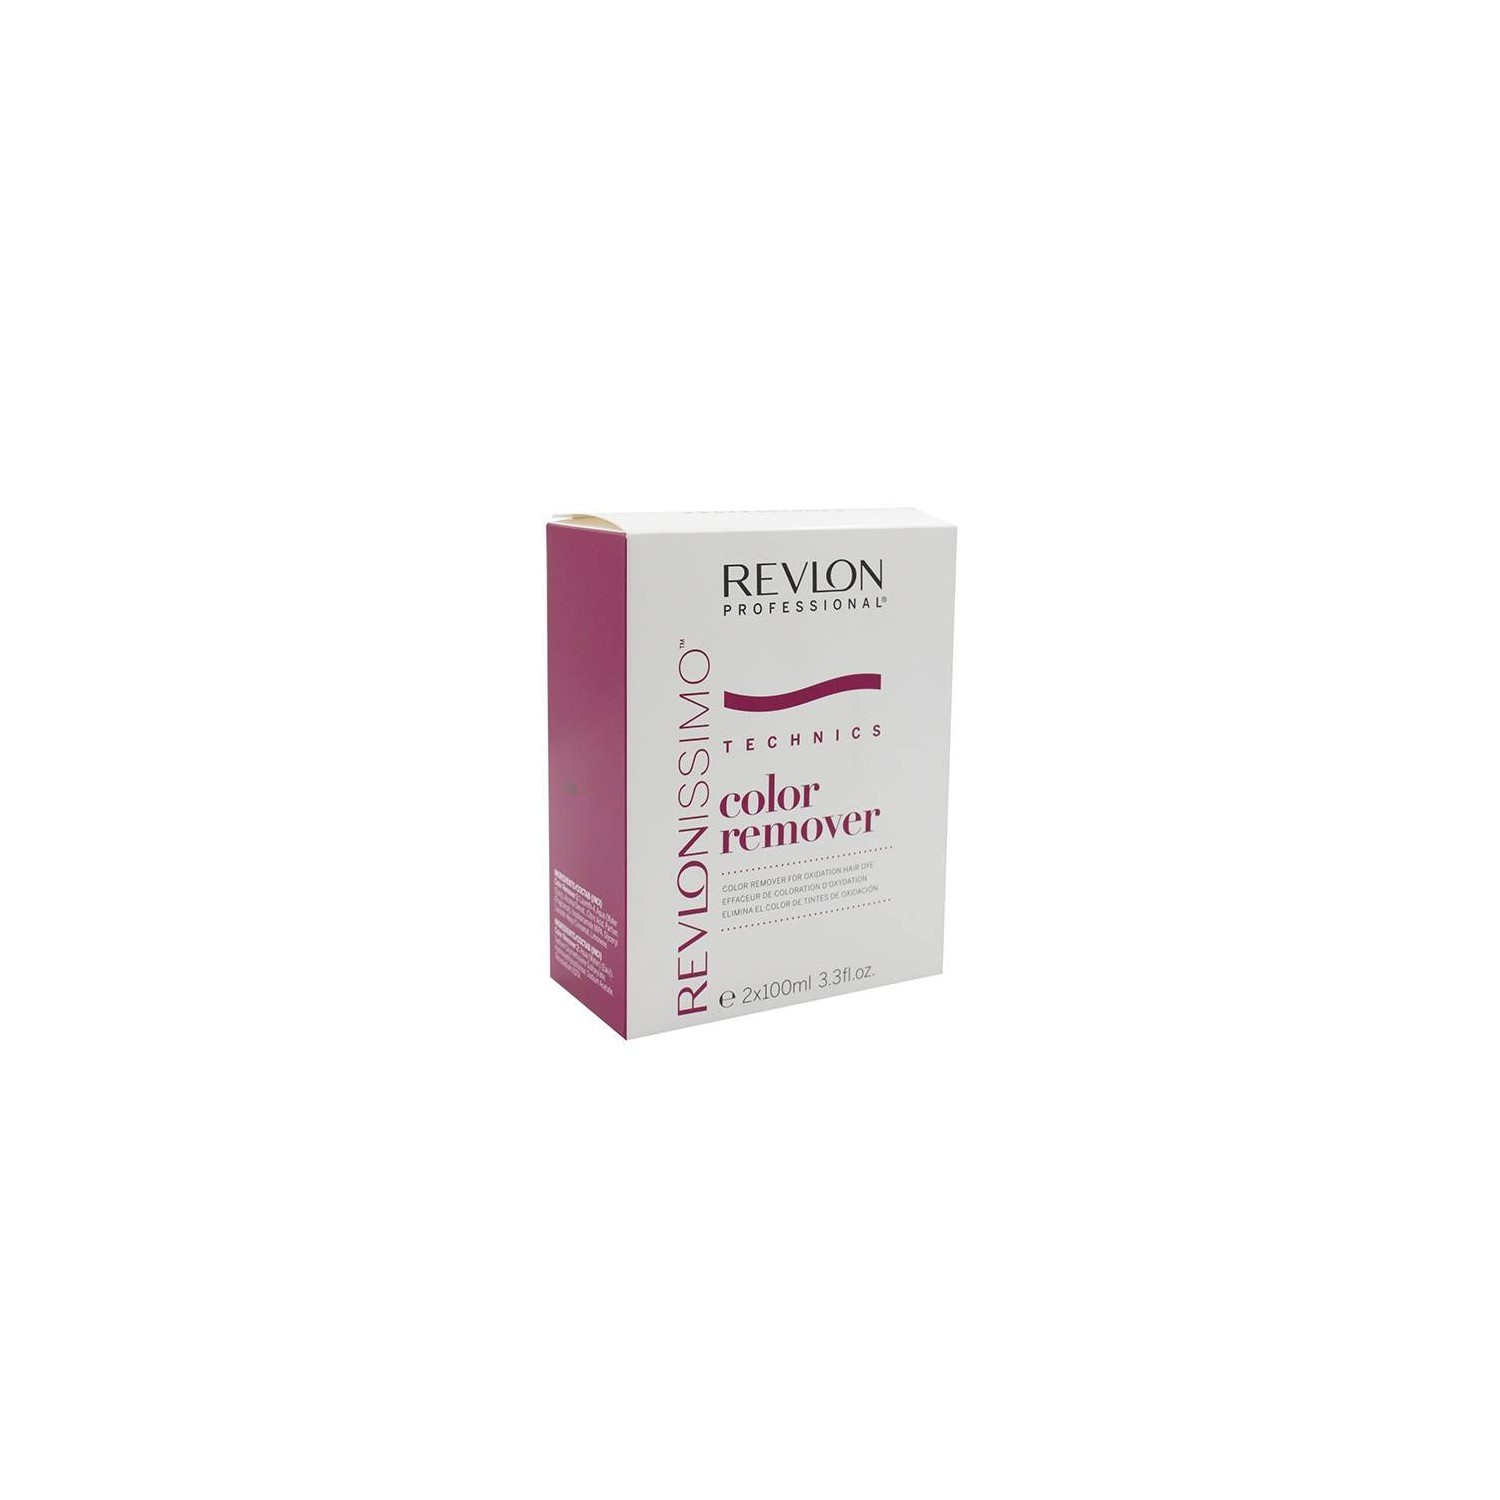 Revlon Couleur Remover (Paso 1-2) 2x 100 ml